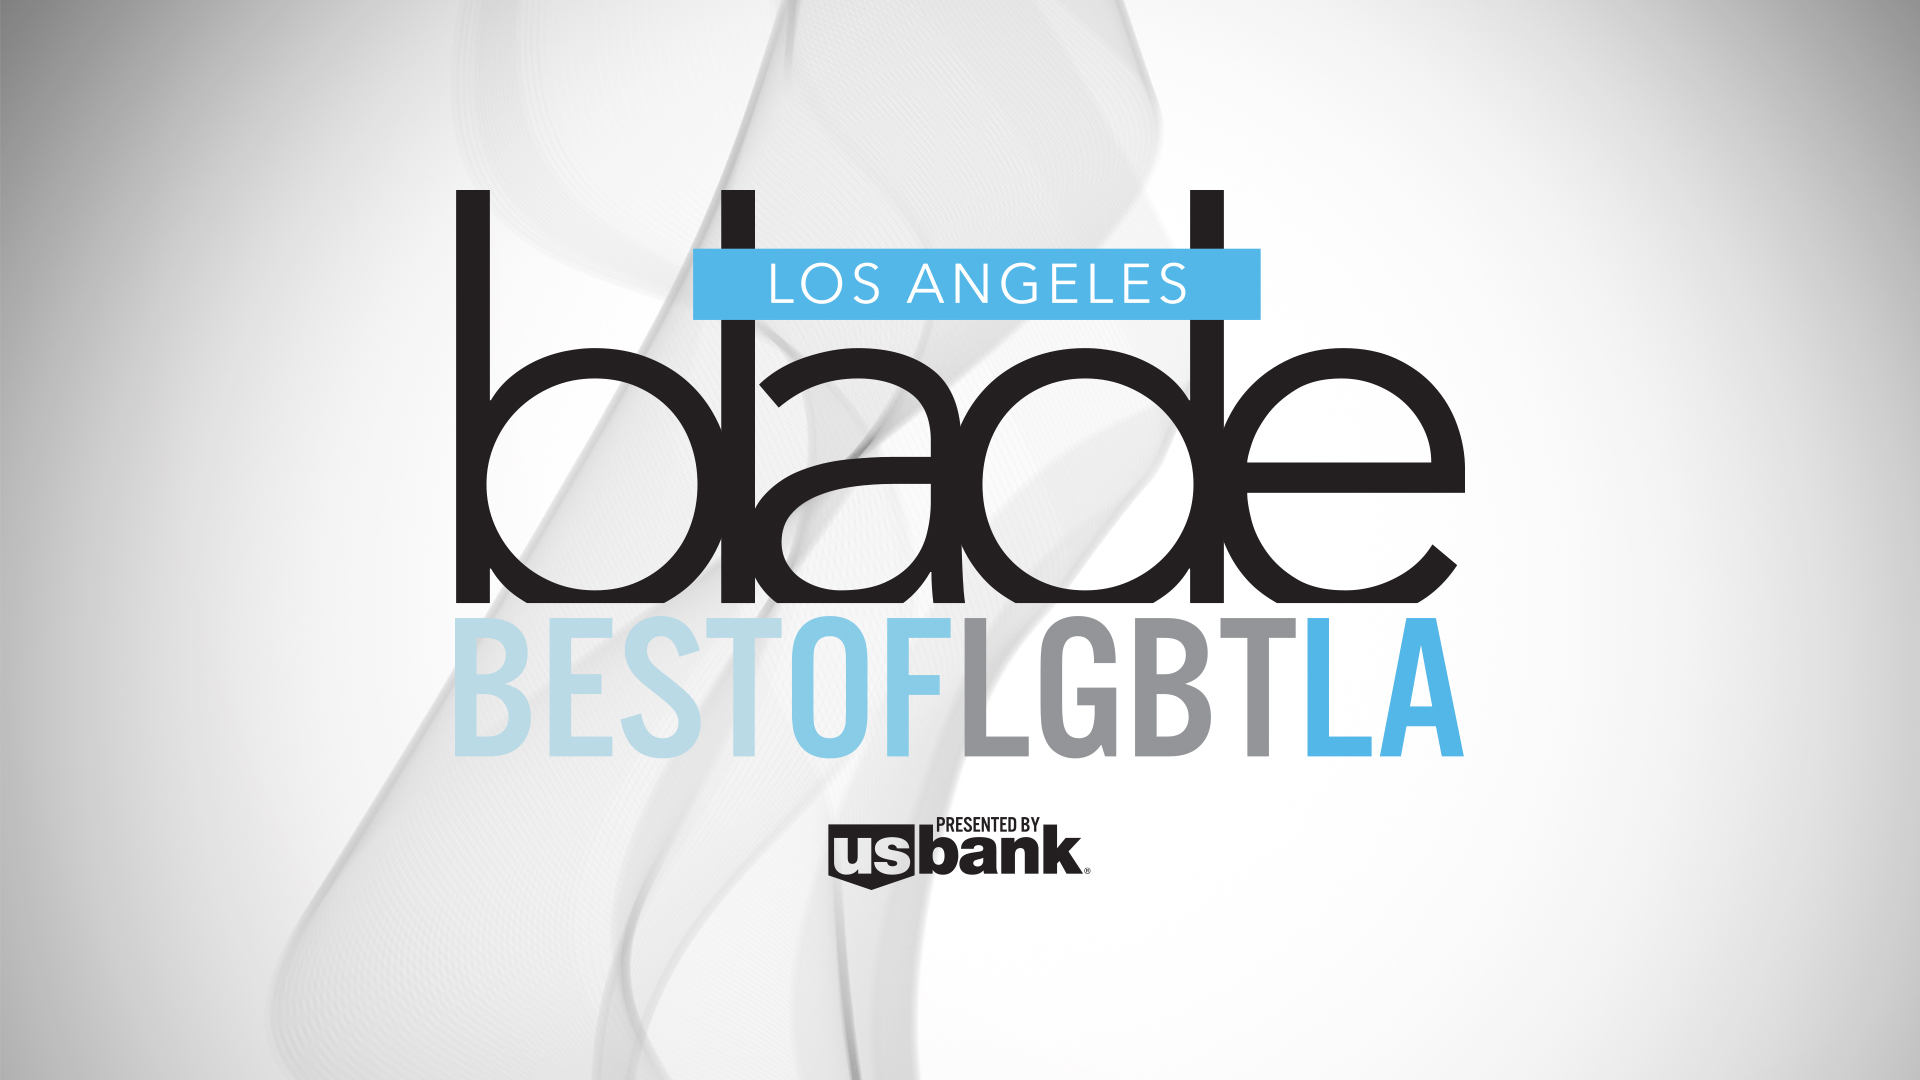 Best of LGBT LA 2019 photo image